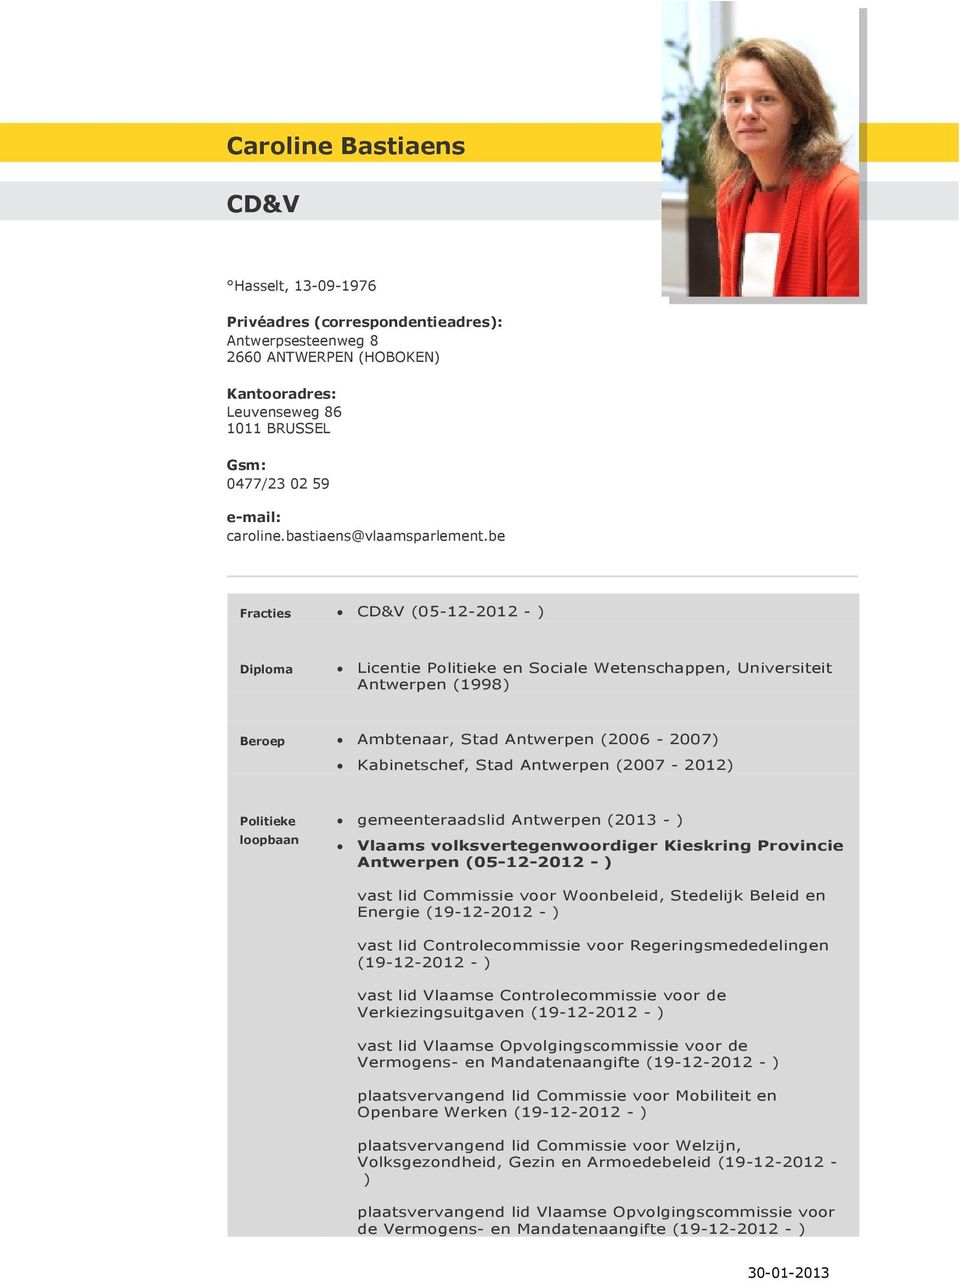 be CD&V (05-12-2012 - ) Licentie en Sociale Wetenschappen, Universiteit Antwerpen (1998) Ambtenaar, Stad Antwerpen (2006-2007) Kabinetschef, Stad Antwerpen (2007-2012) gemeenteraadslid Antwerpen